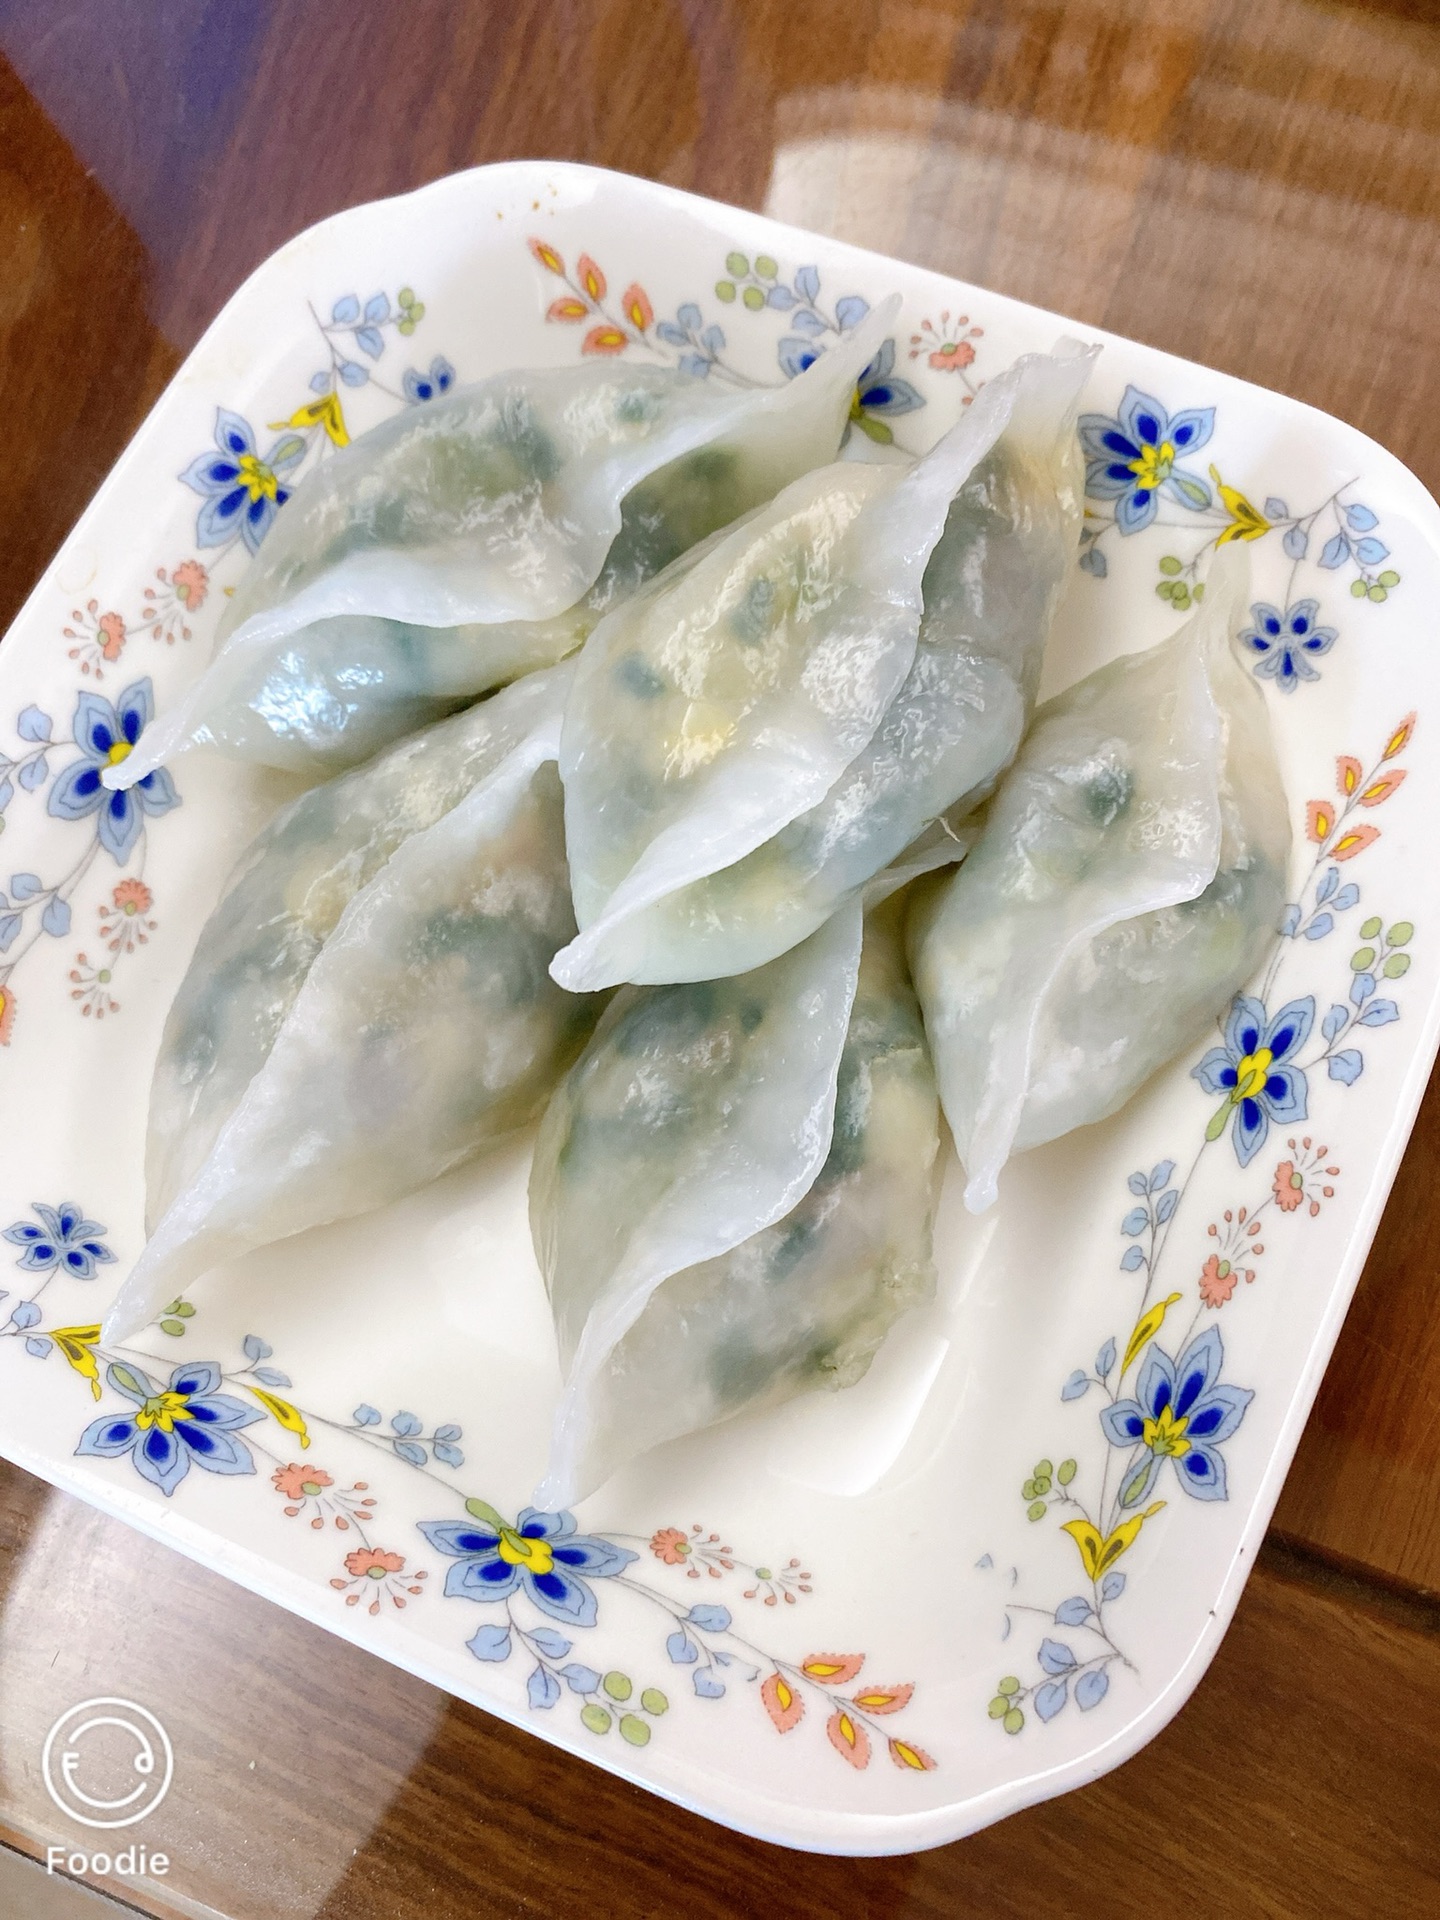 水晶饺子(粿)